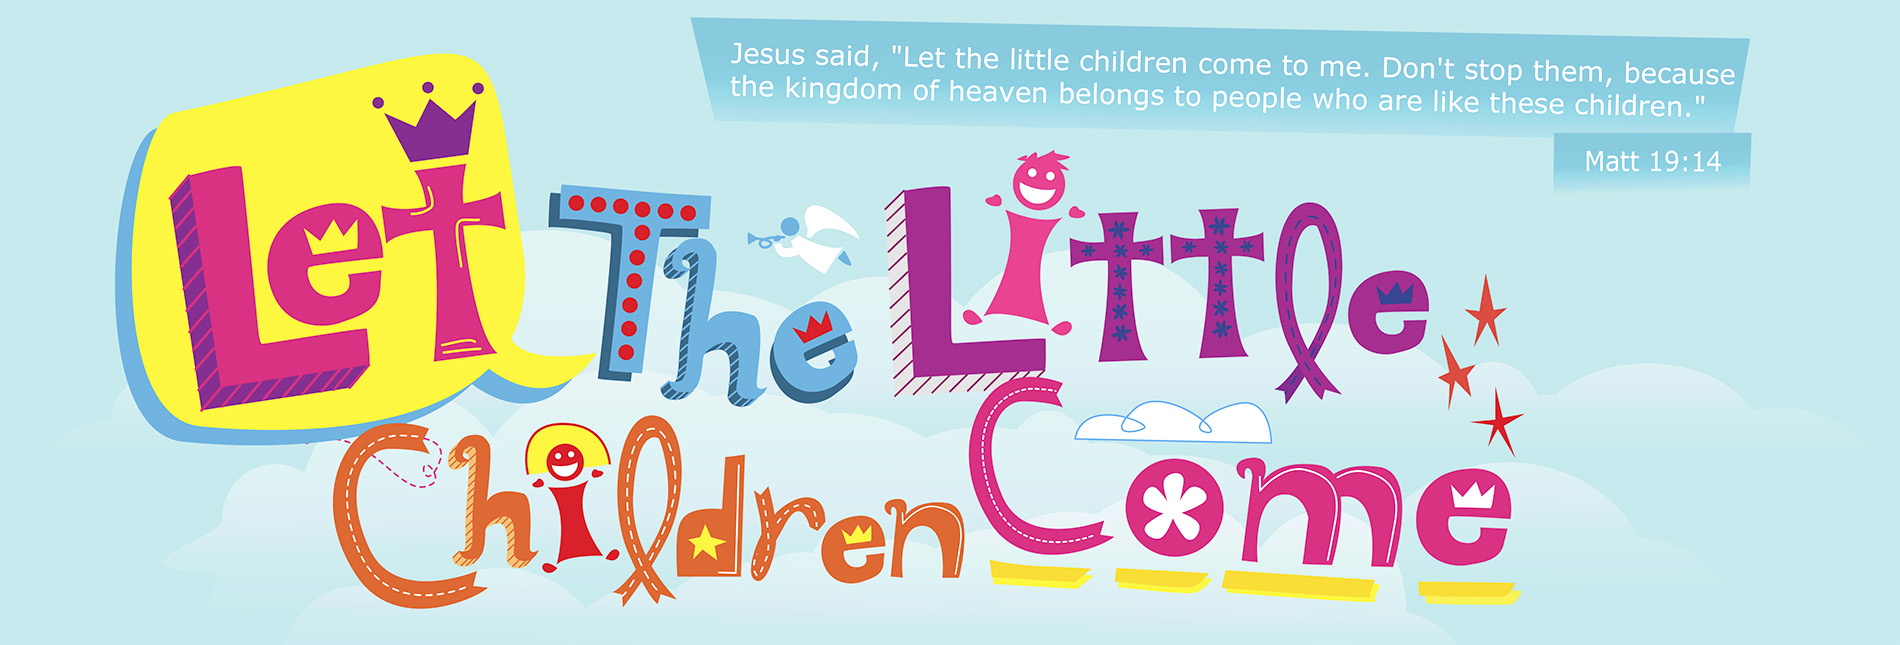 gospel-for-children-banner